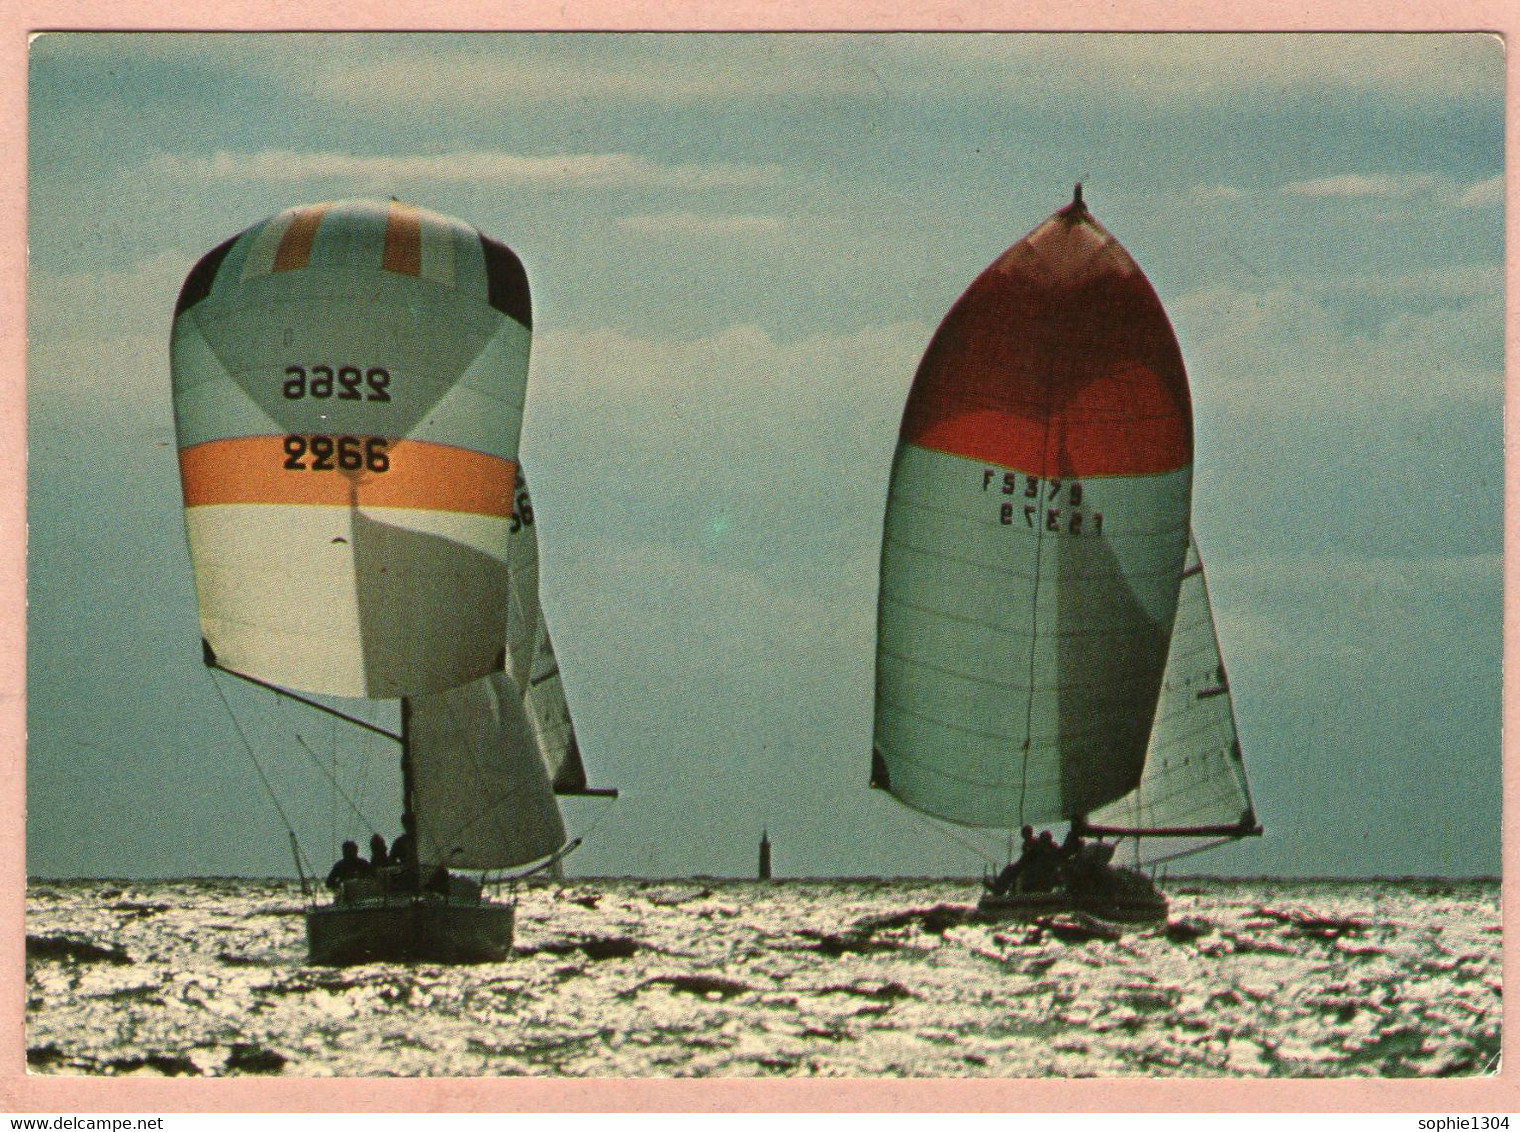 Les "GROS" Reviennent Vent Arrière Sous Spinakers Multicolores - 1979 - - Sailing